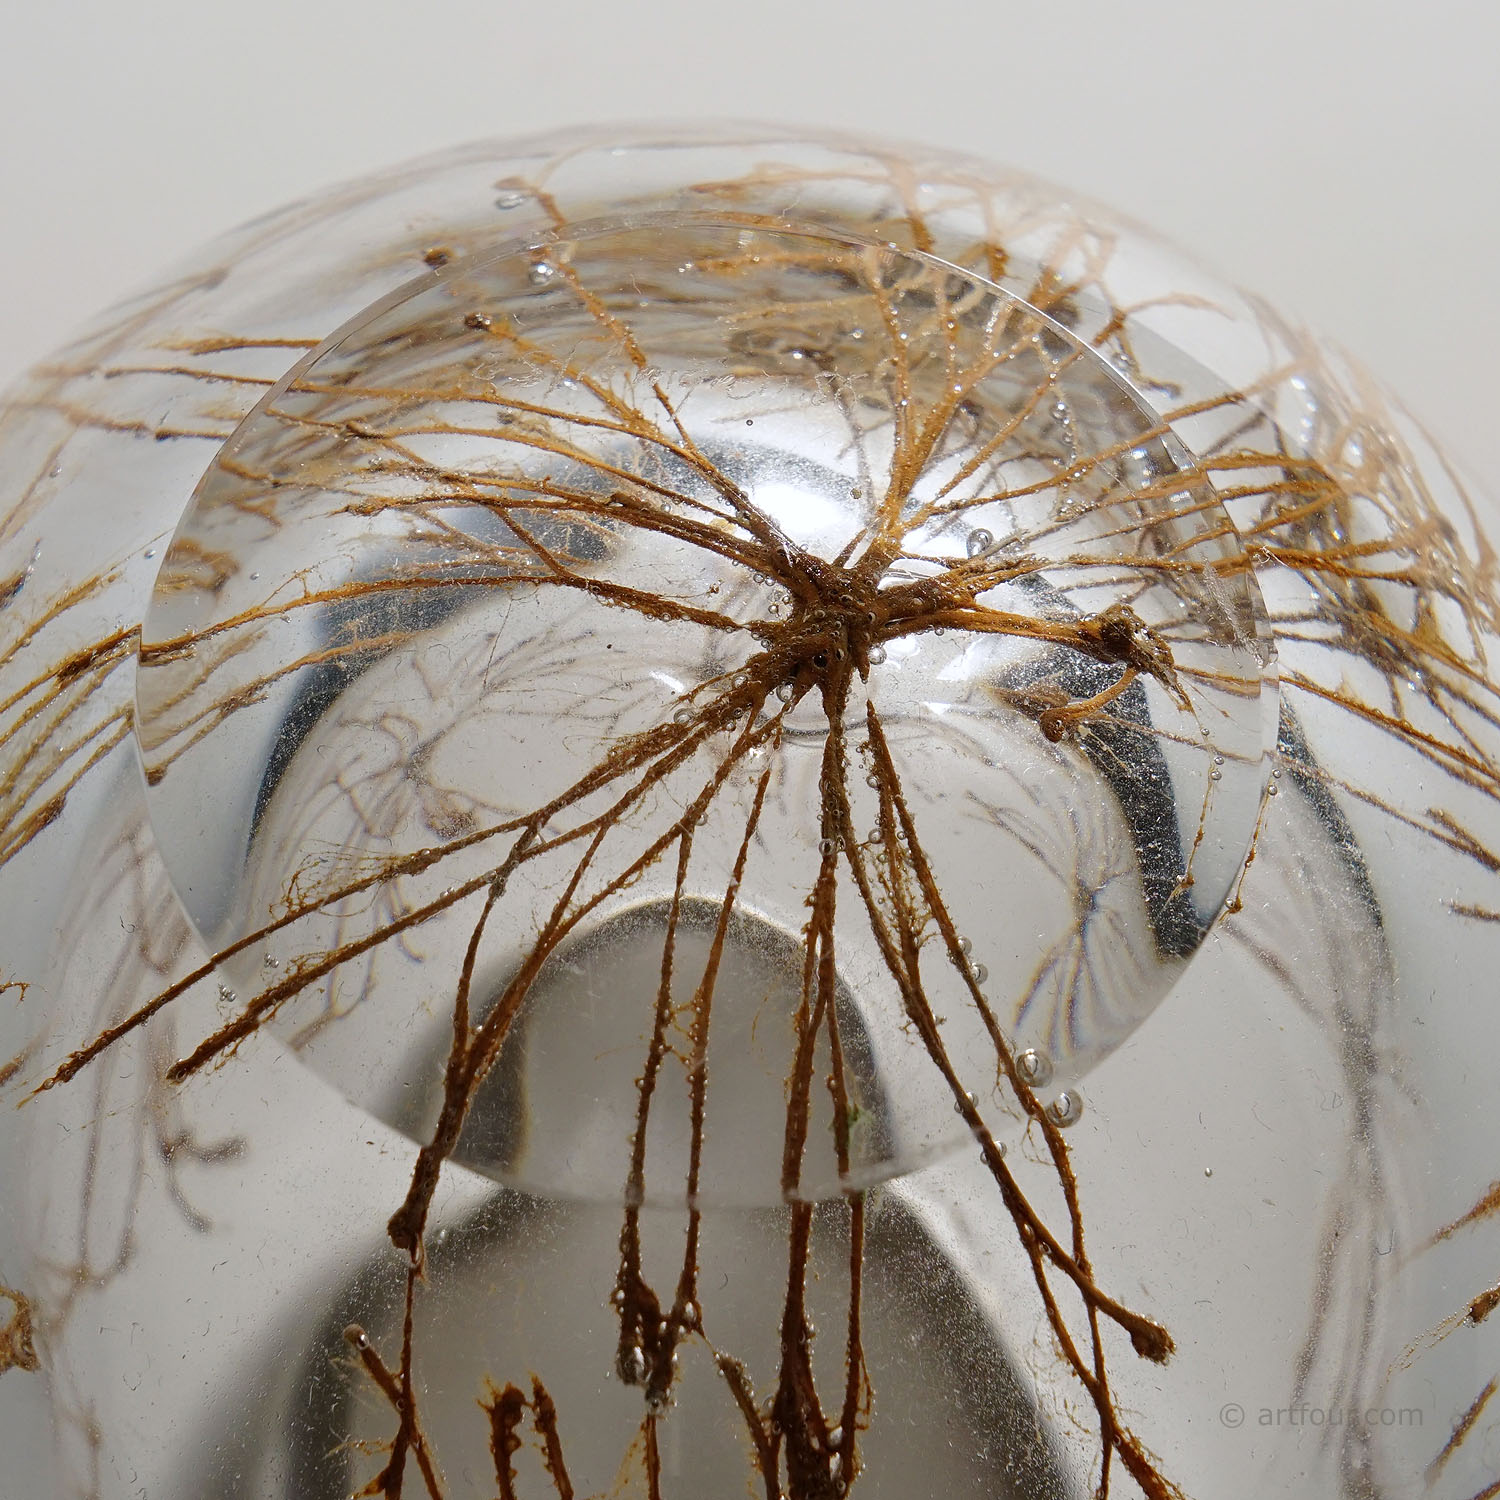 Graal Artglass Vase by Goran Stroemgren for Art Glassworks Urshult Sweden